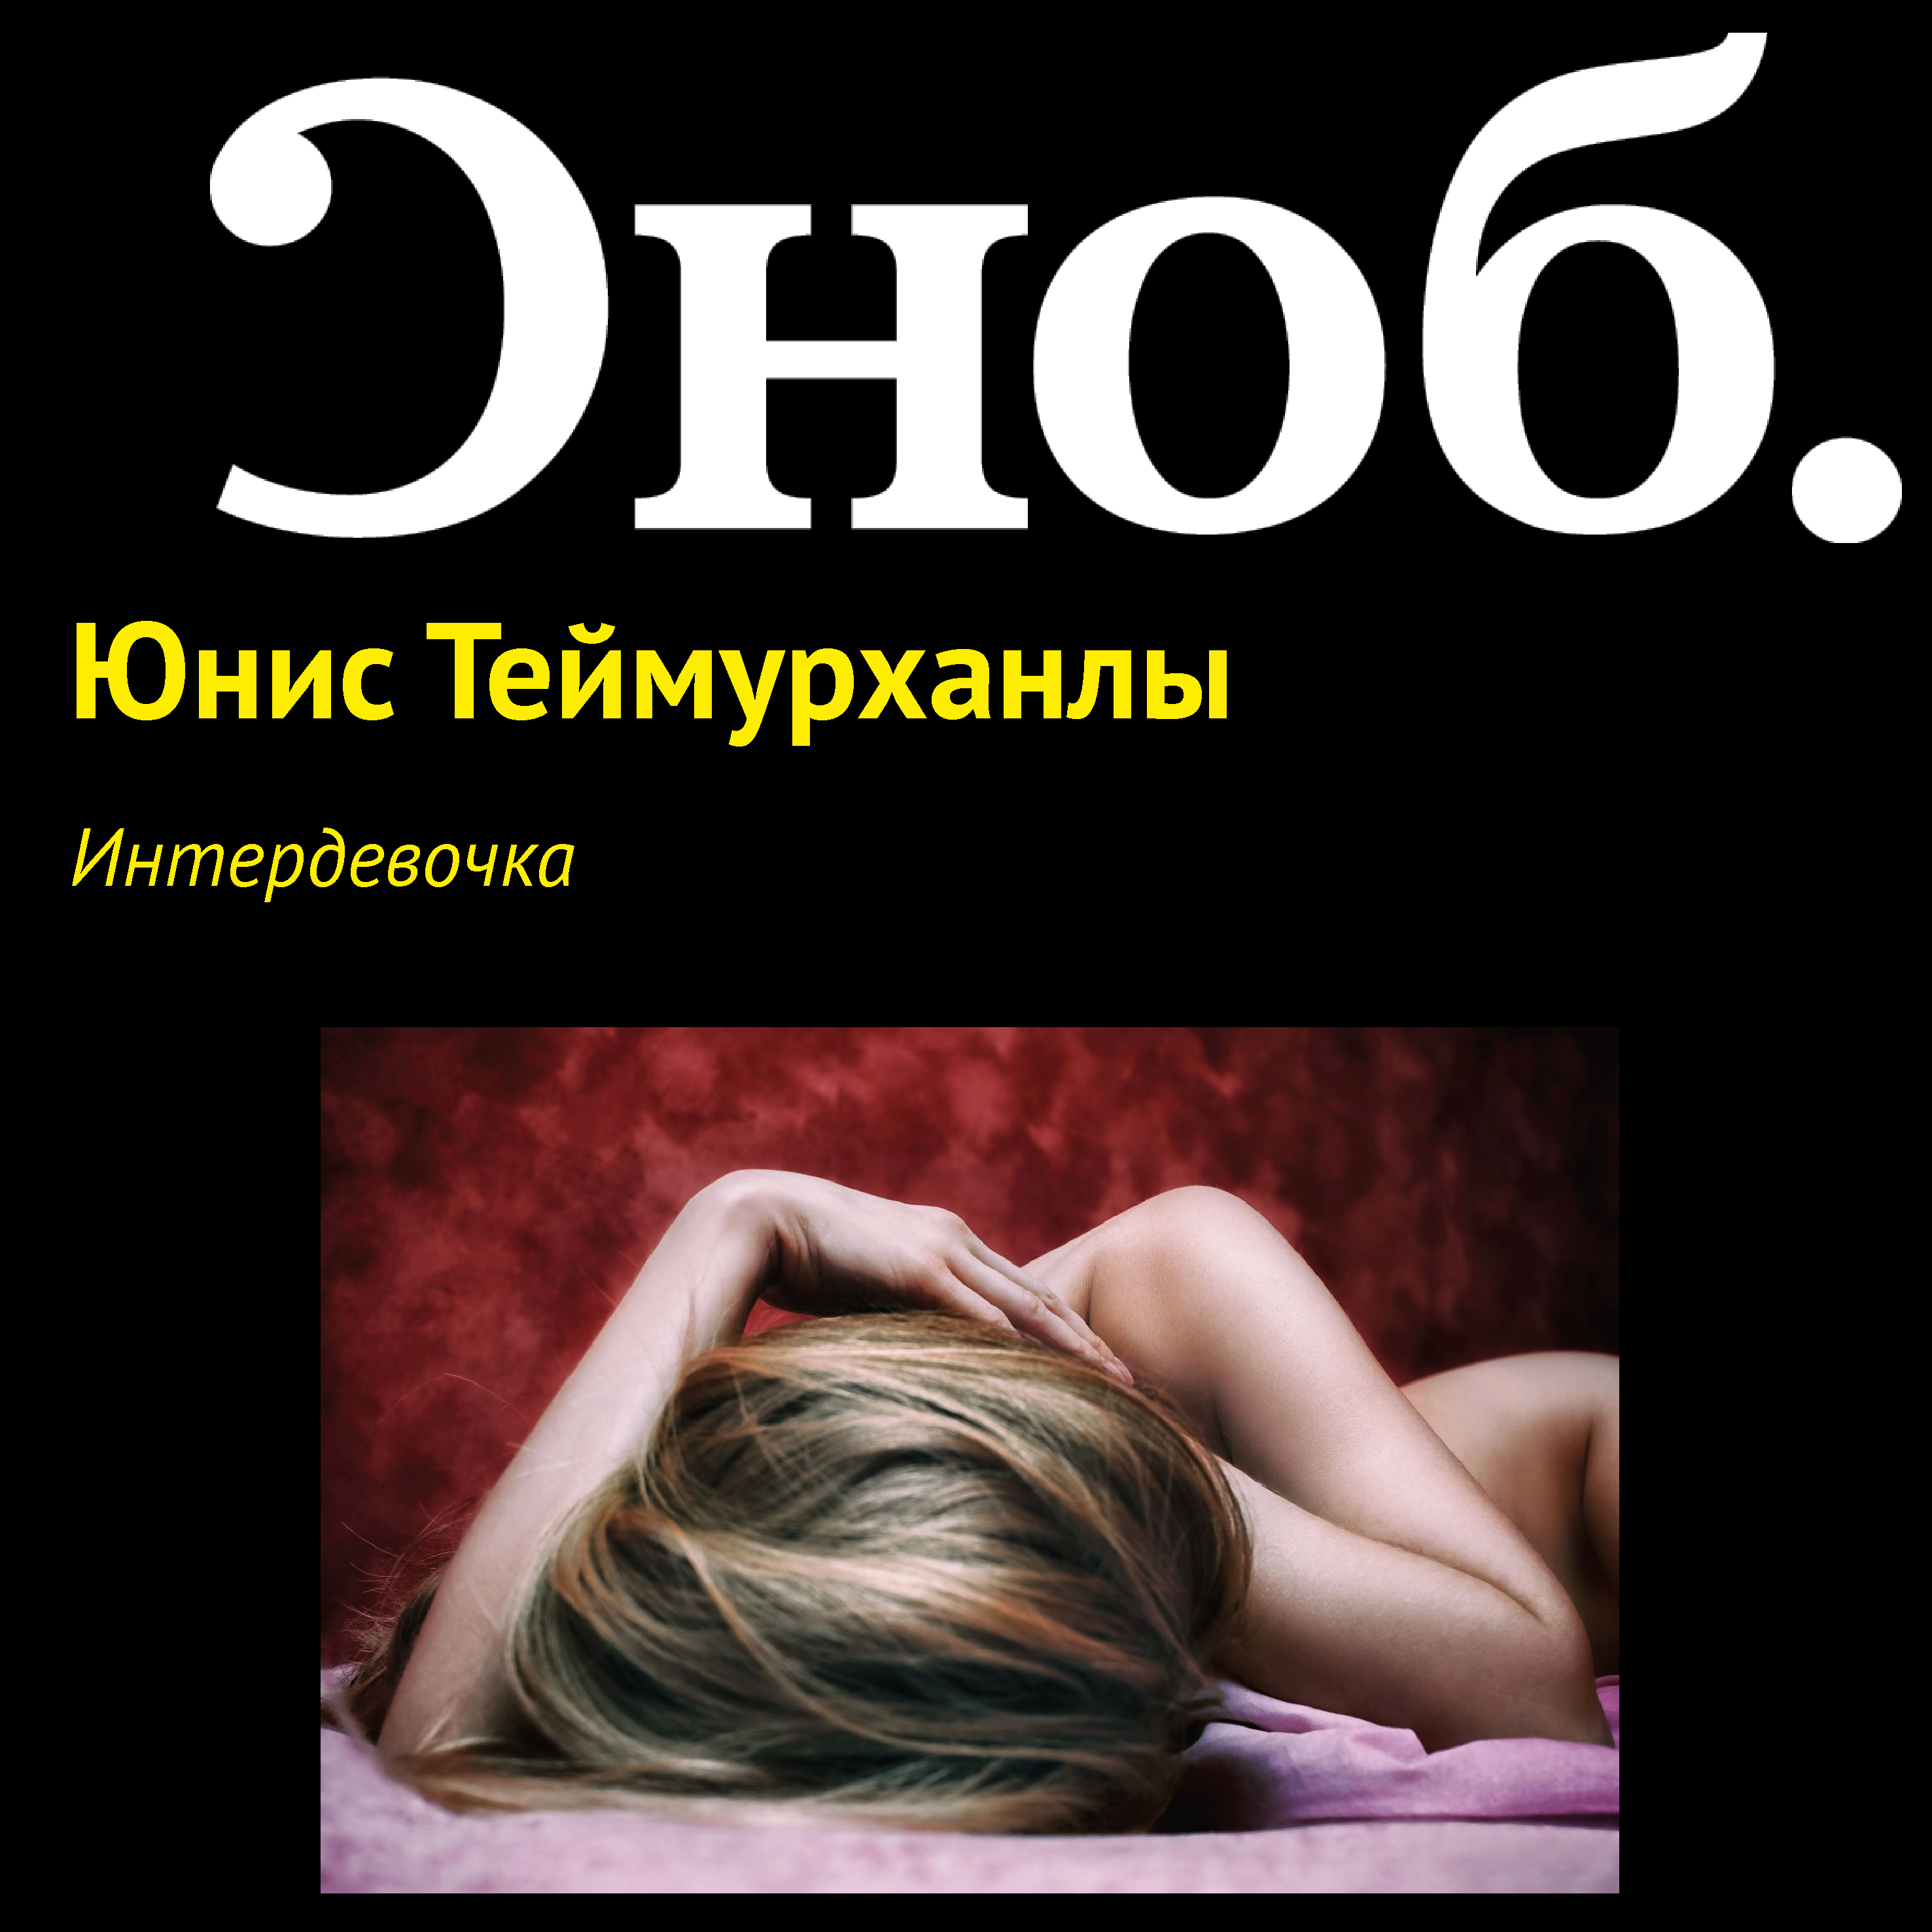 Старая нимфоманка - порно видео на intim-top.ru